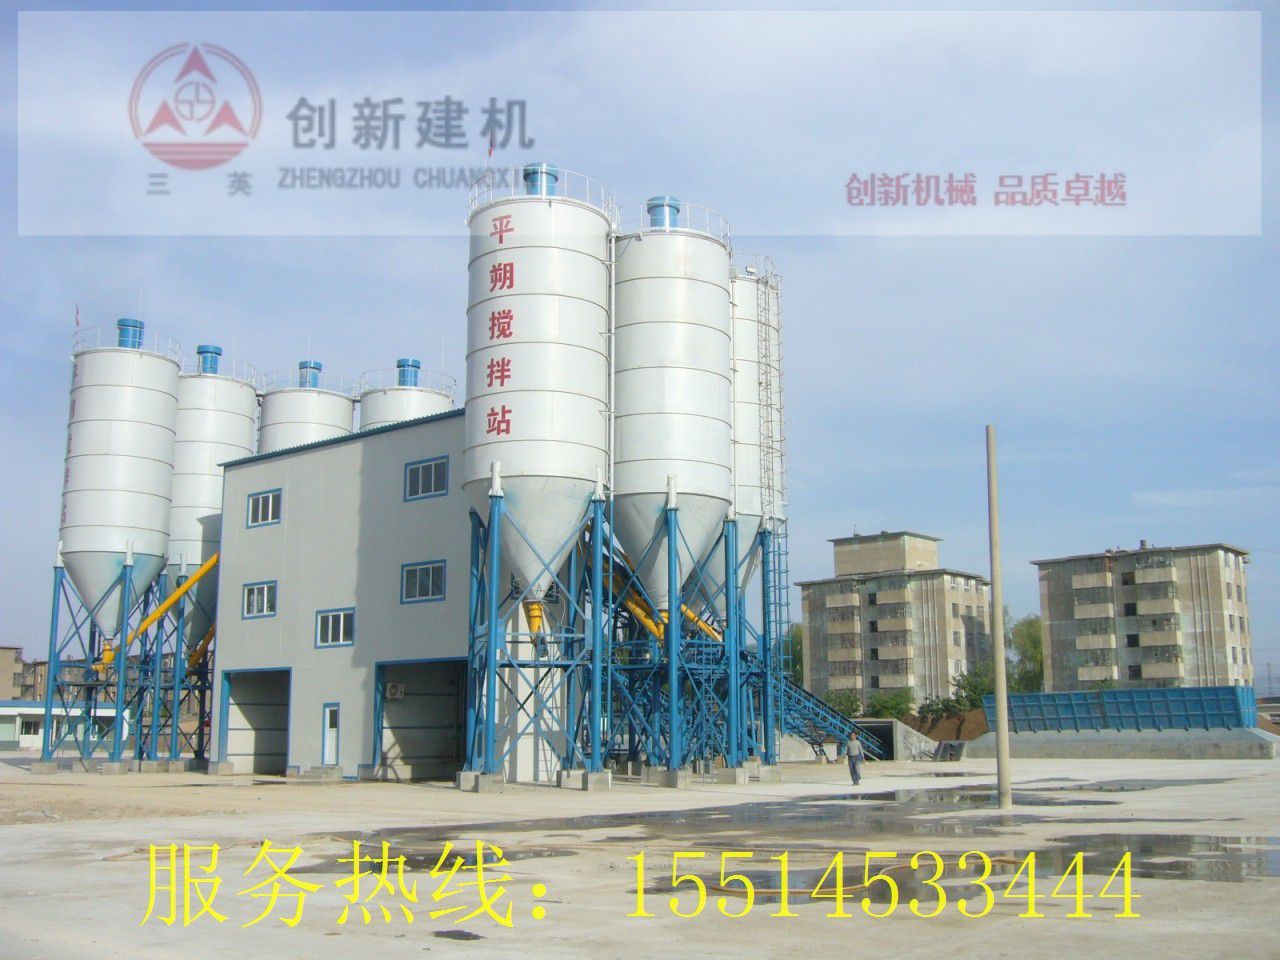 北京房山区水泥仓季节需求萎缩厂出货持续不佳